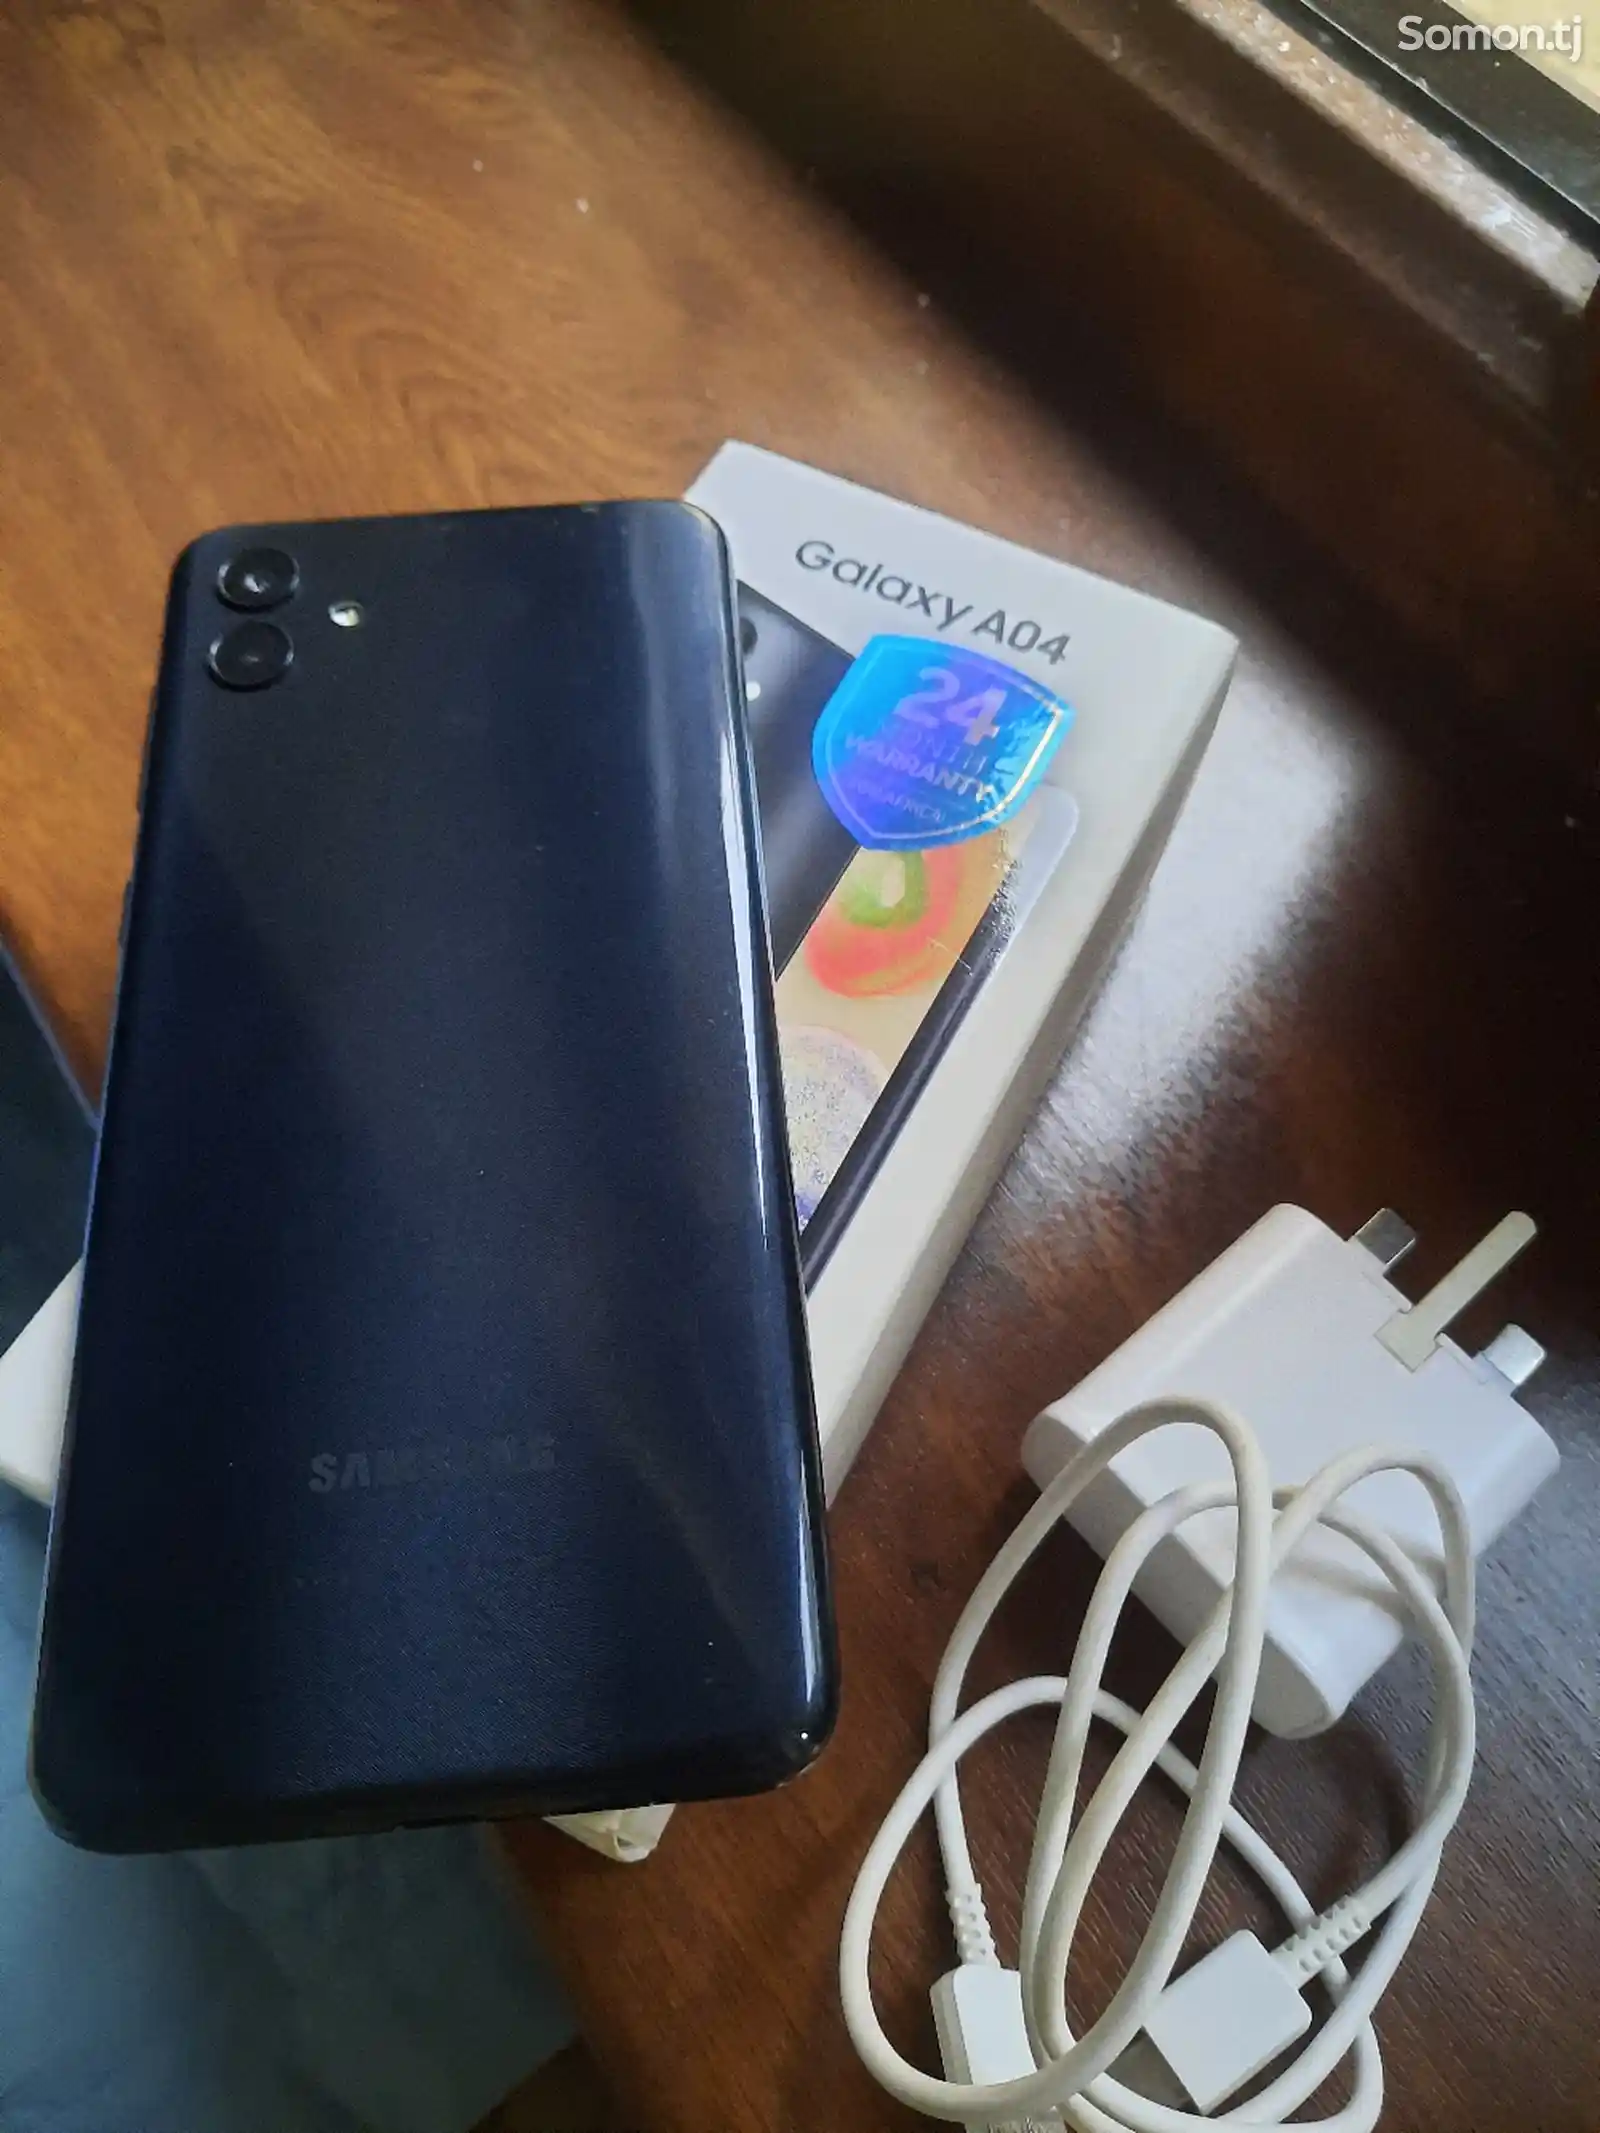 Samsung Galaxy A04-4